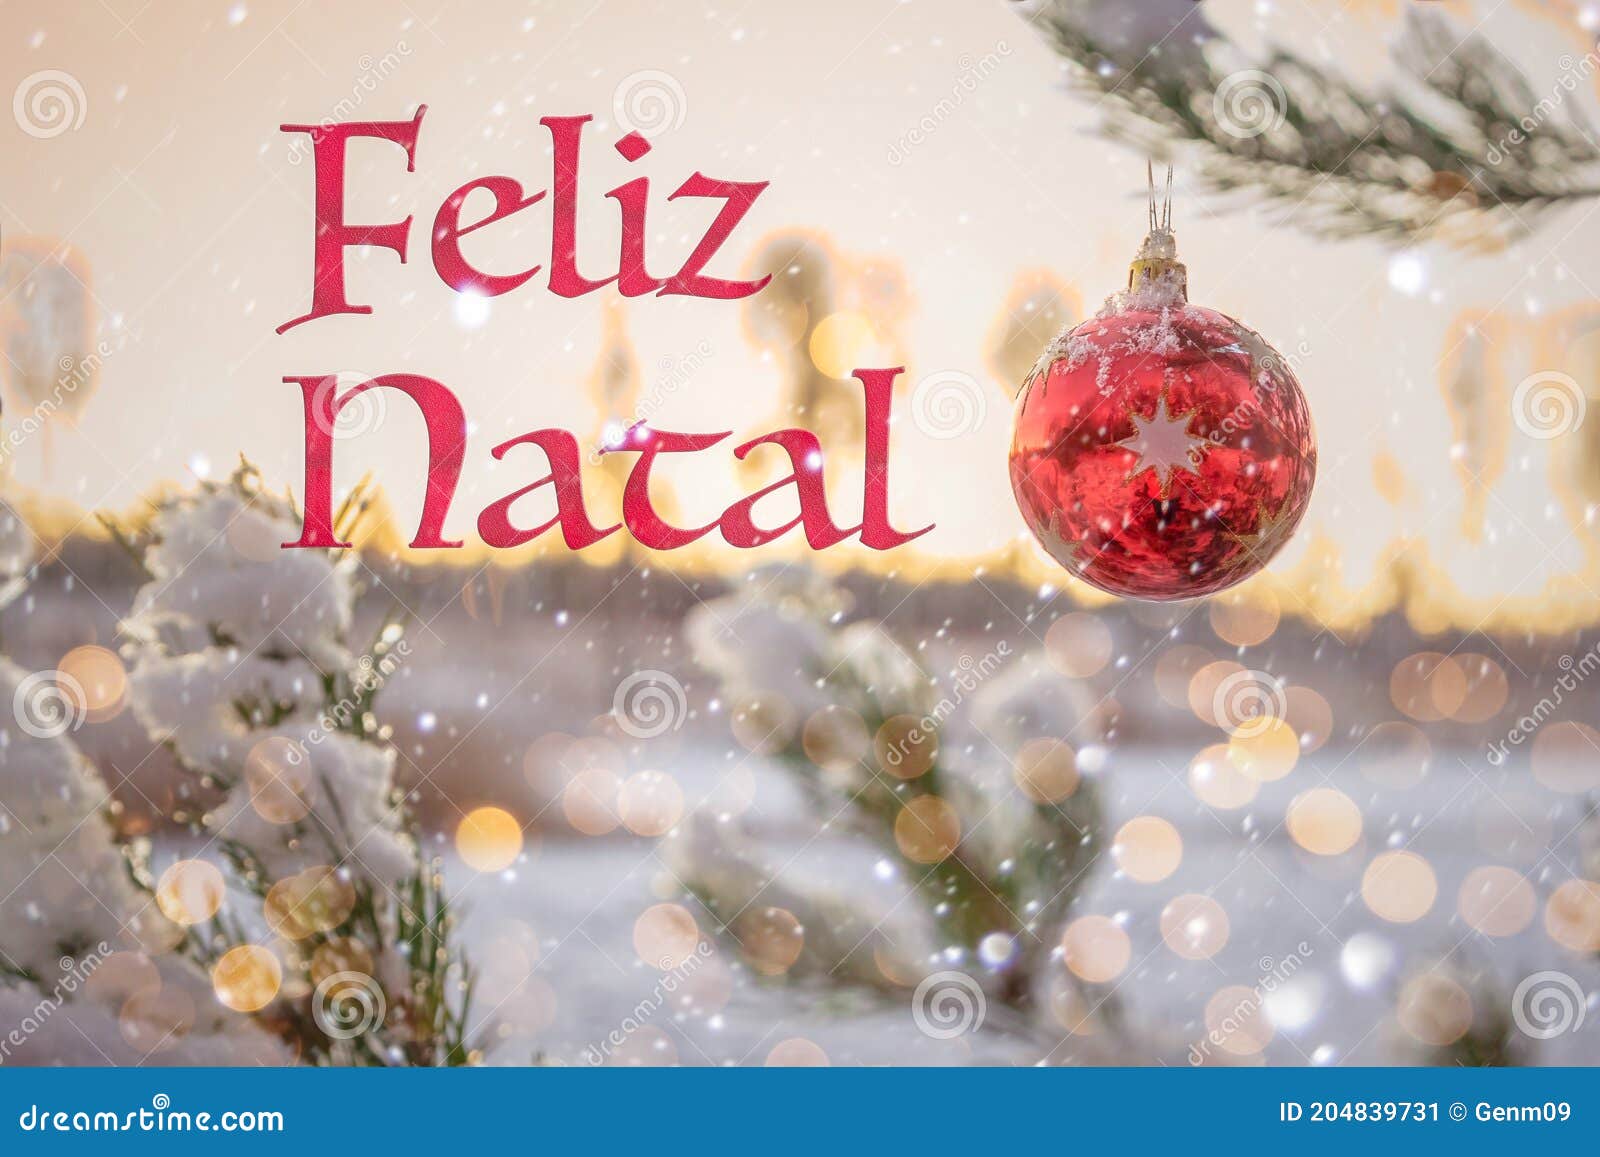 Feliz Natal Significa Feliz Natal Em Português 25 De Dezembro. Fundo  Desfocado Da árvore De Natal Na Neve Imagem de Stock - Imagem de fundo,  abeto: 204839731